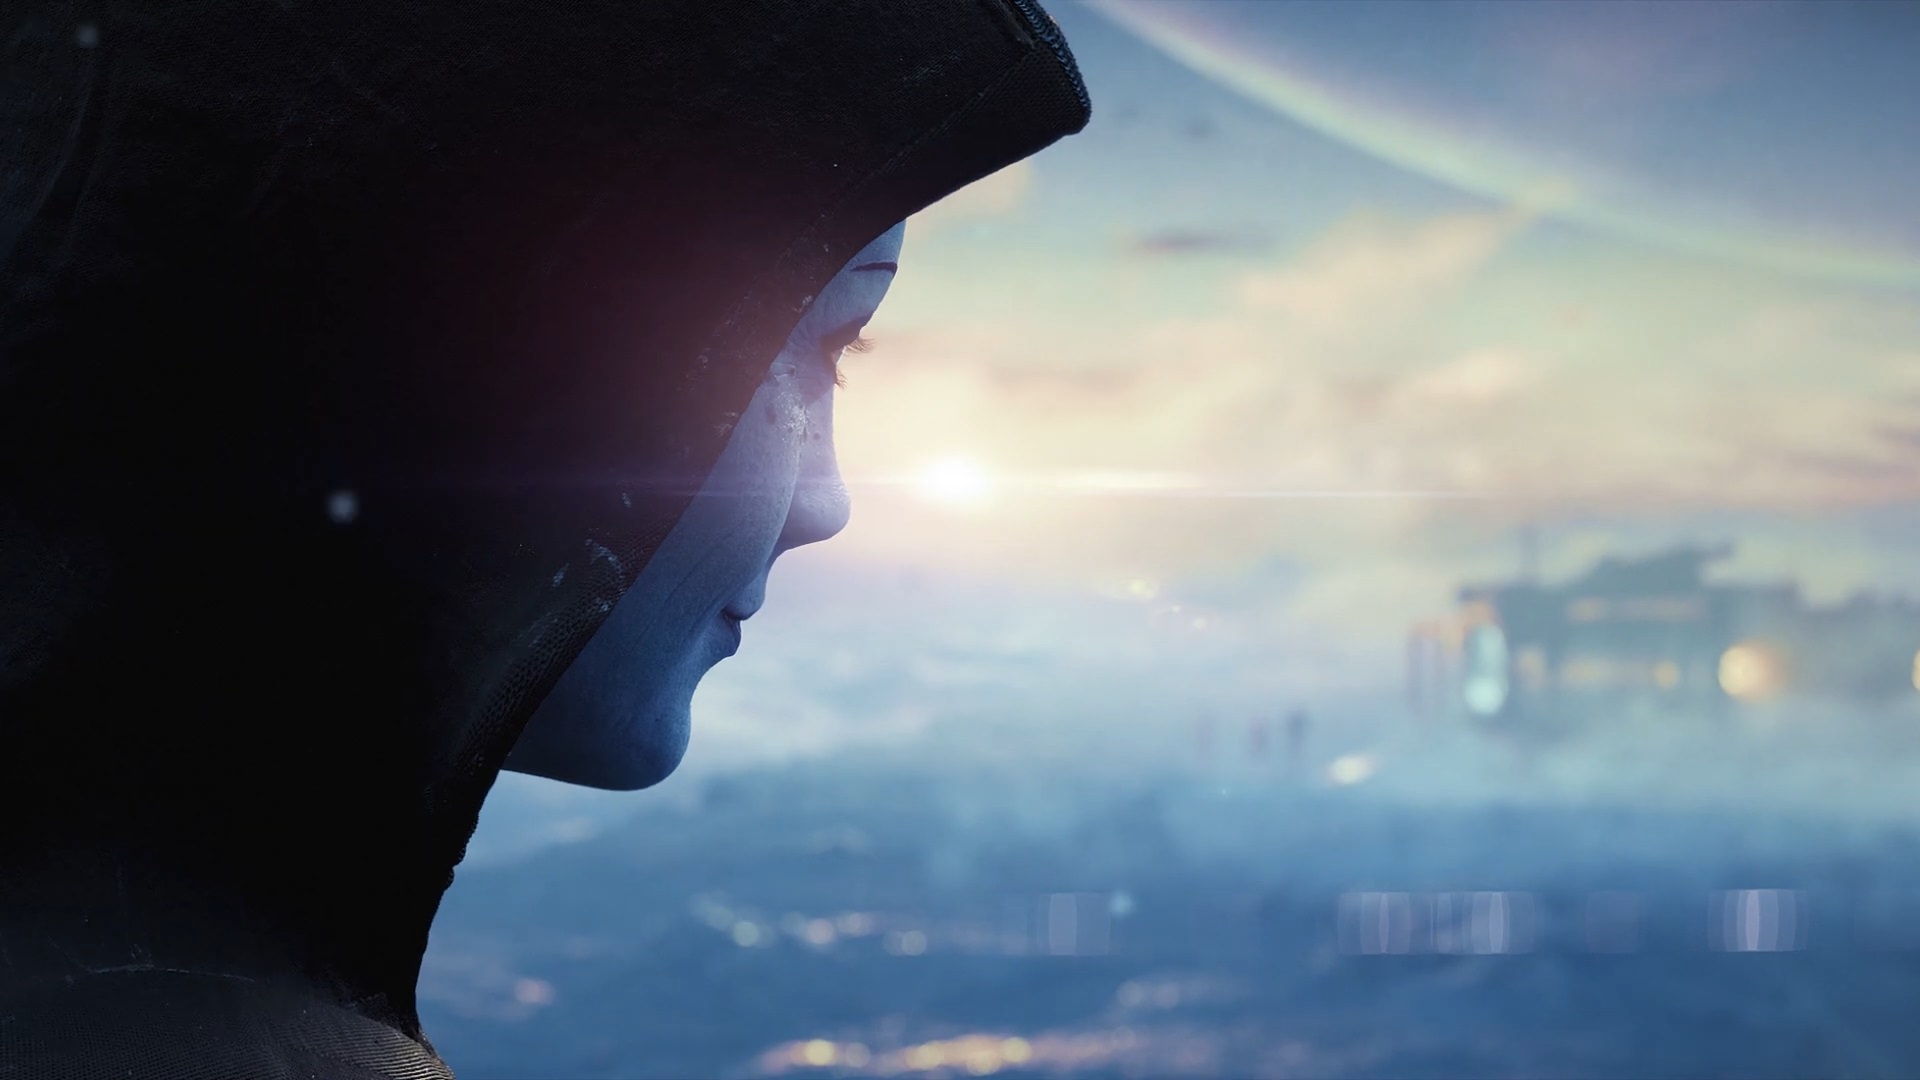 تریلر نسخه جدید Mass Effect در The Game Awards 2020 منتشر شد